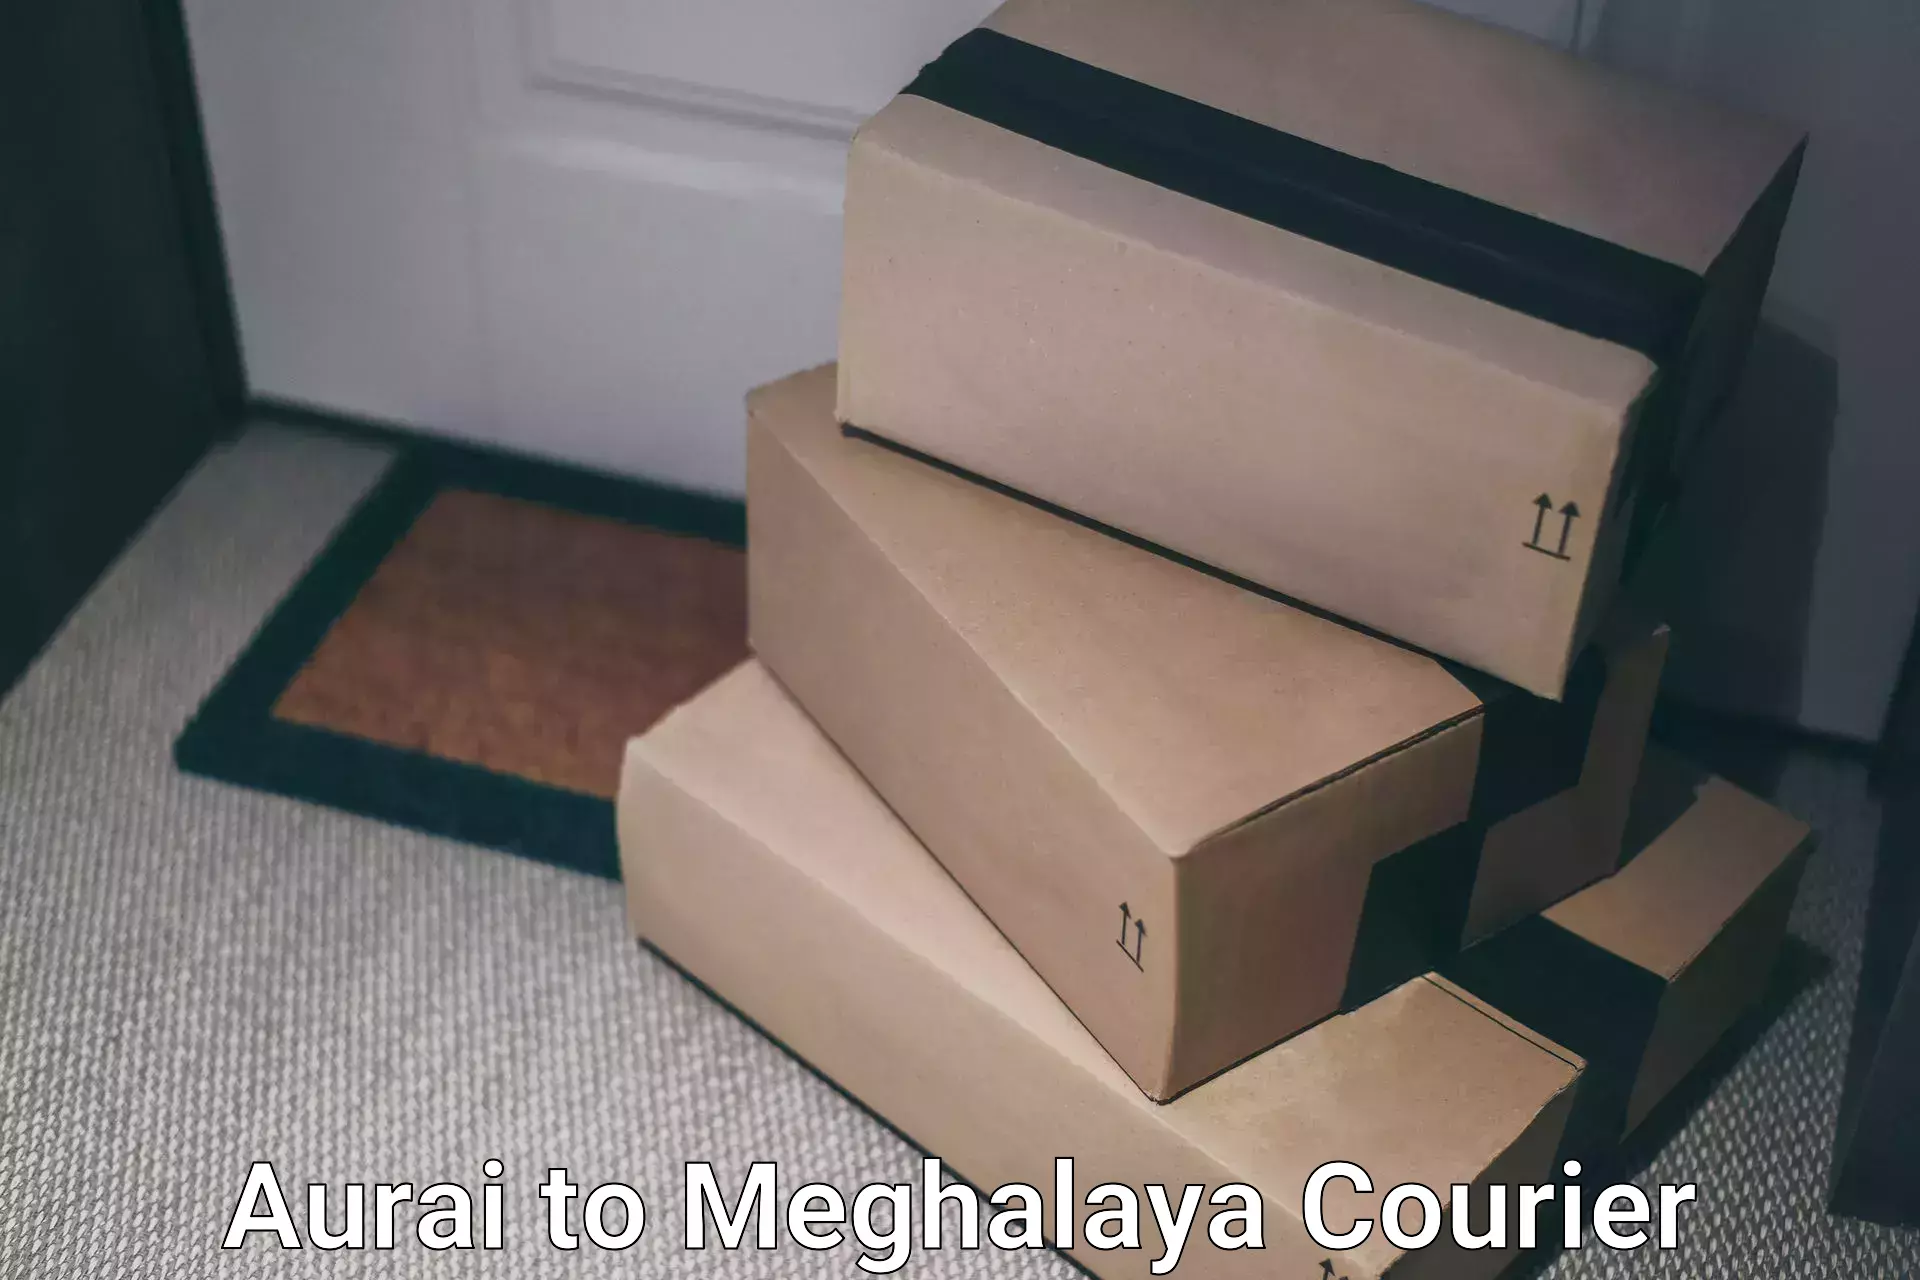 Next-generation courier services Aurai to Dkhiah West